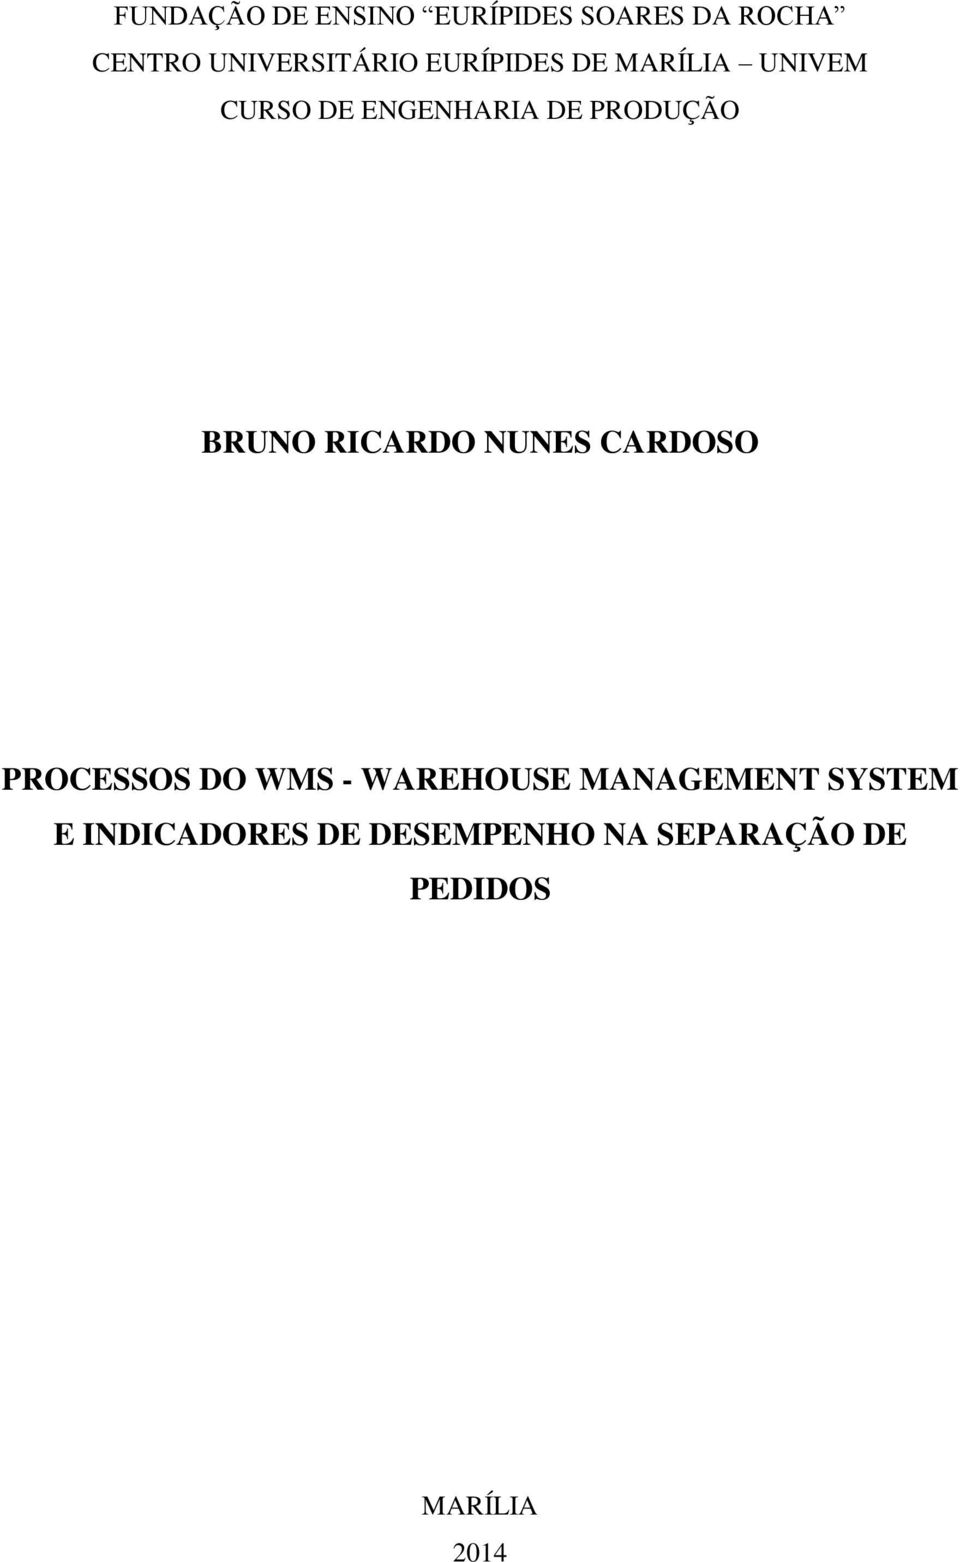 PRODUÇÃO BRUNO RICARDO NUNES CARDOSO PROCESSOS DO WMS - WAREHOUSE